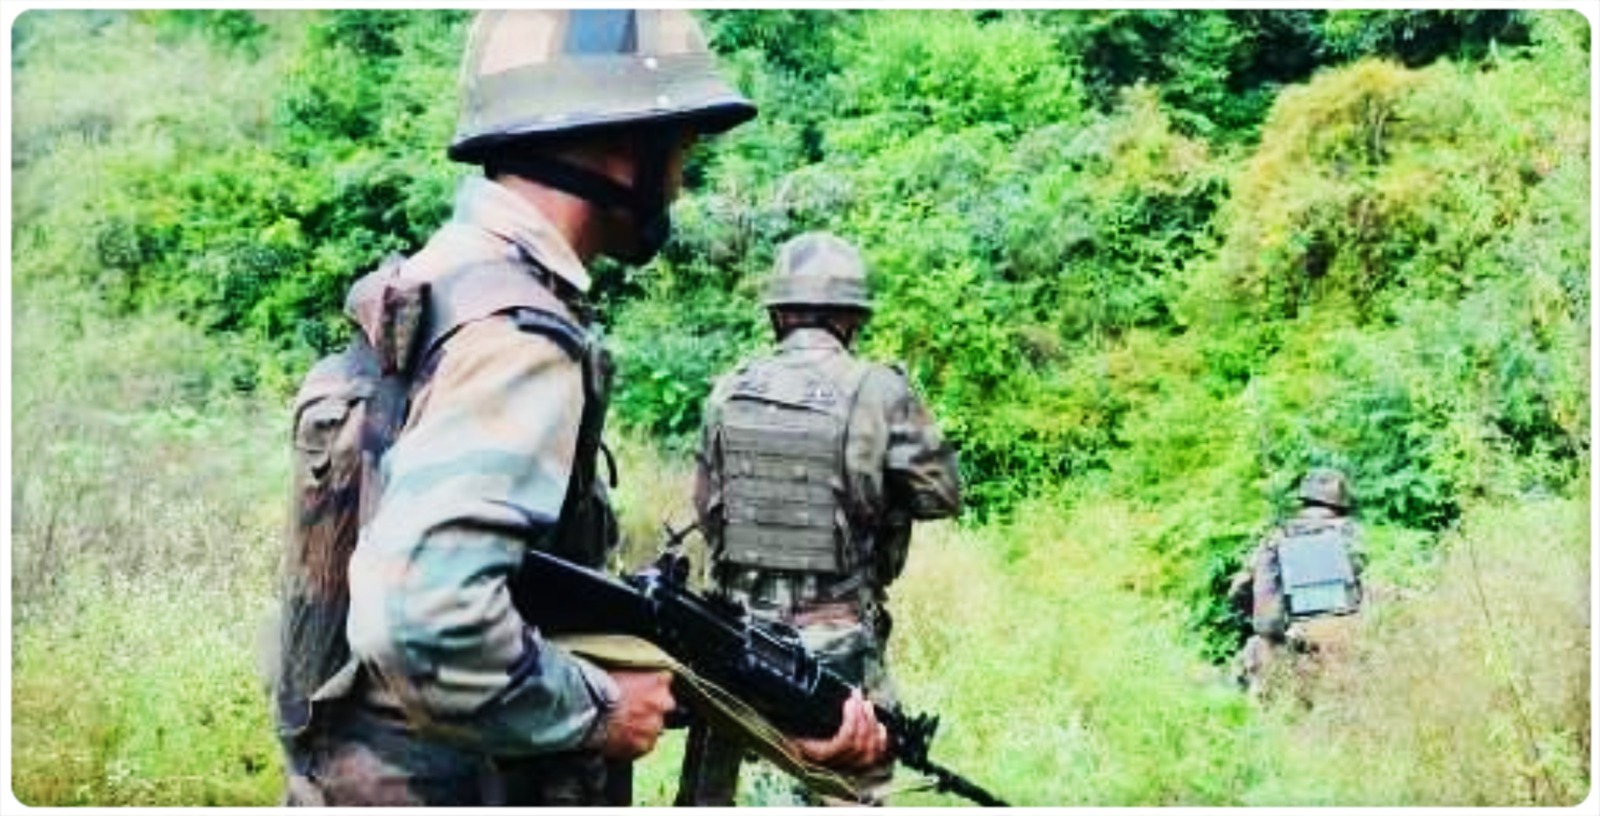 One Suspected NSCN (K) Cadre Shot Dead in Police Firing in Arunachal Pradesh